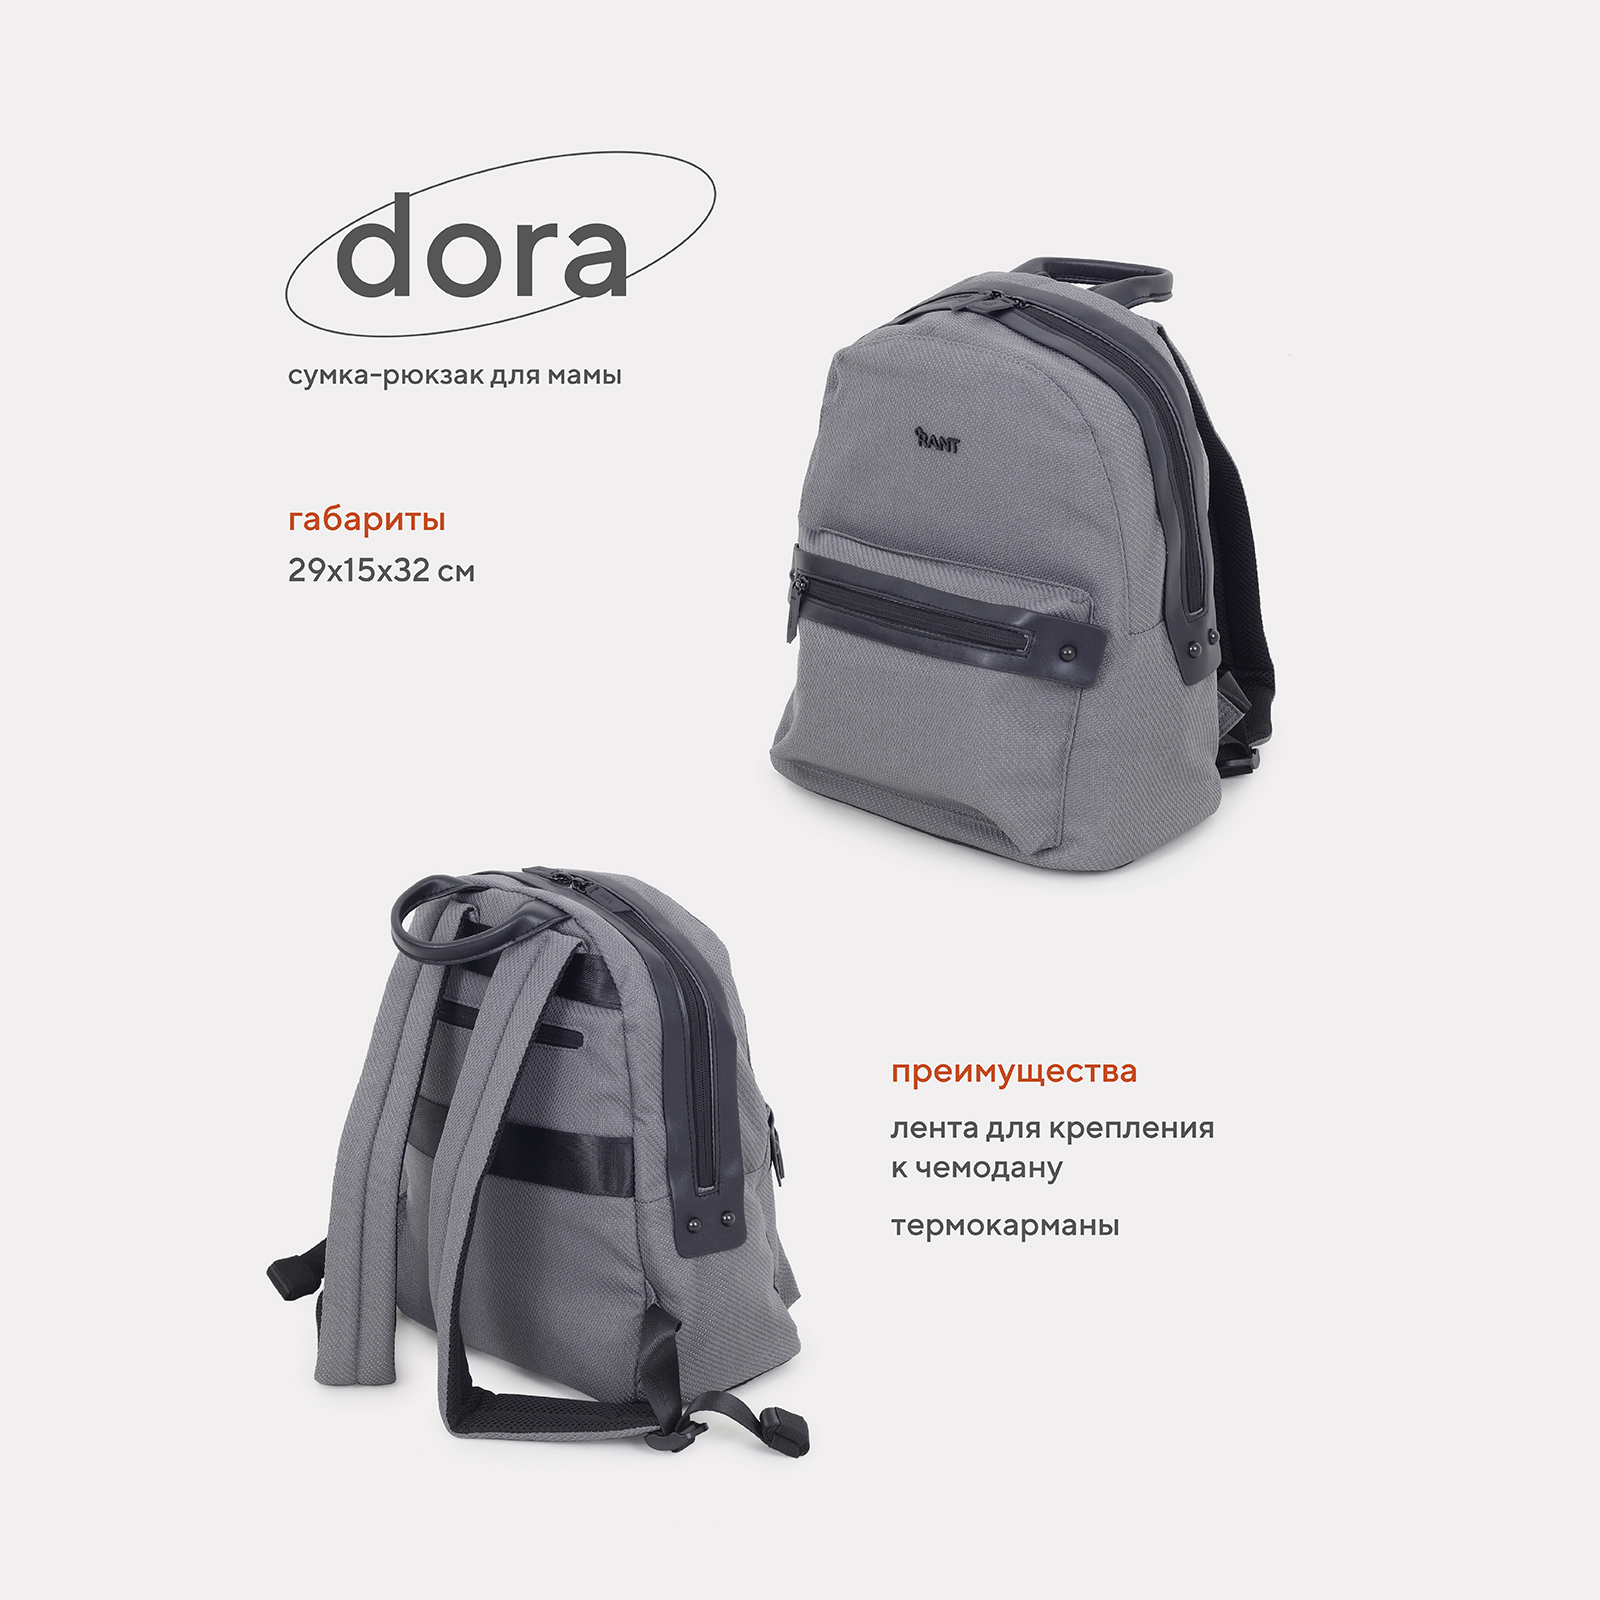 Сумка-рюкзак для мамы RANT Dora RB009 Grey сумка для мамы rant flocky trends grey